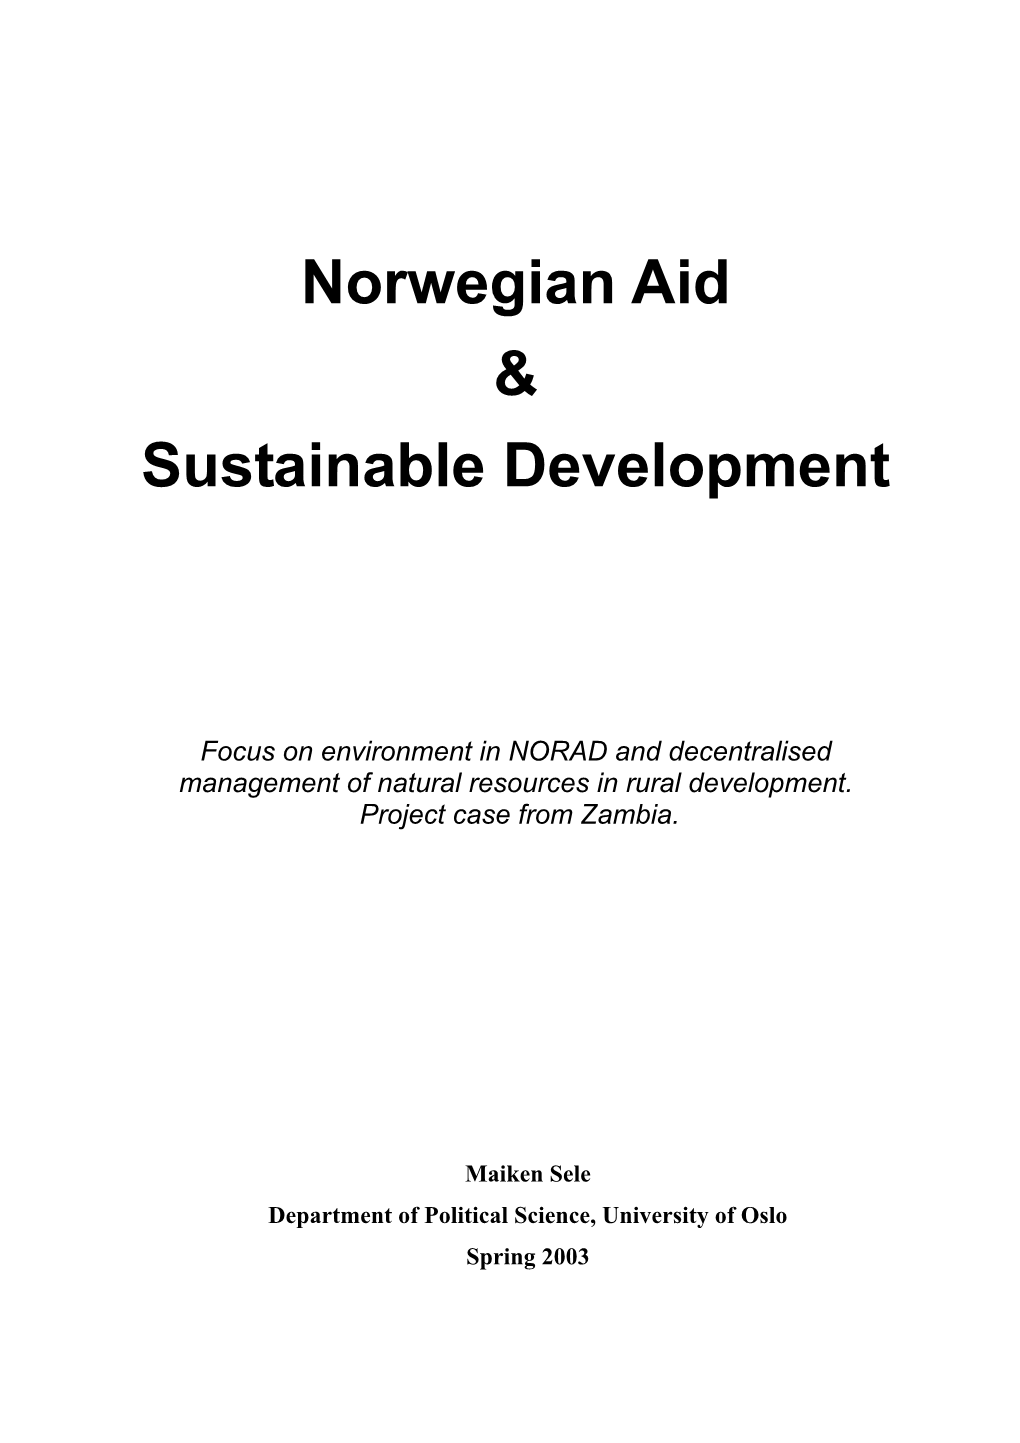 Norwegian Aid and Sustainable Development